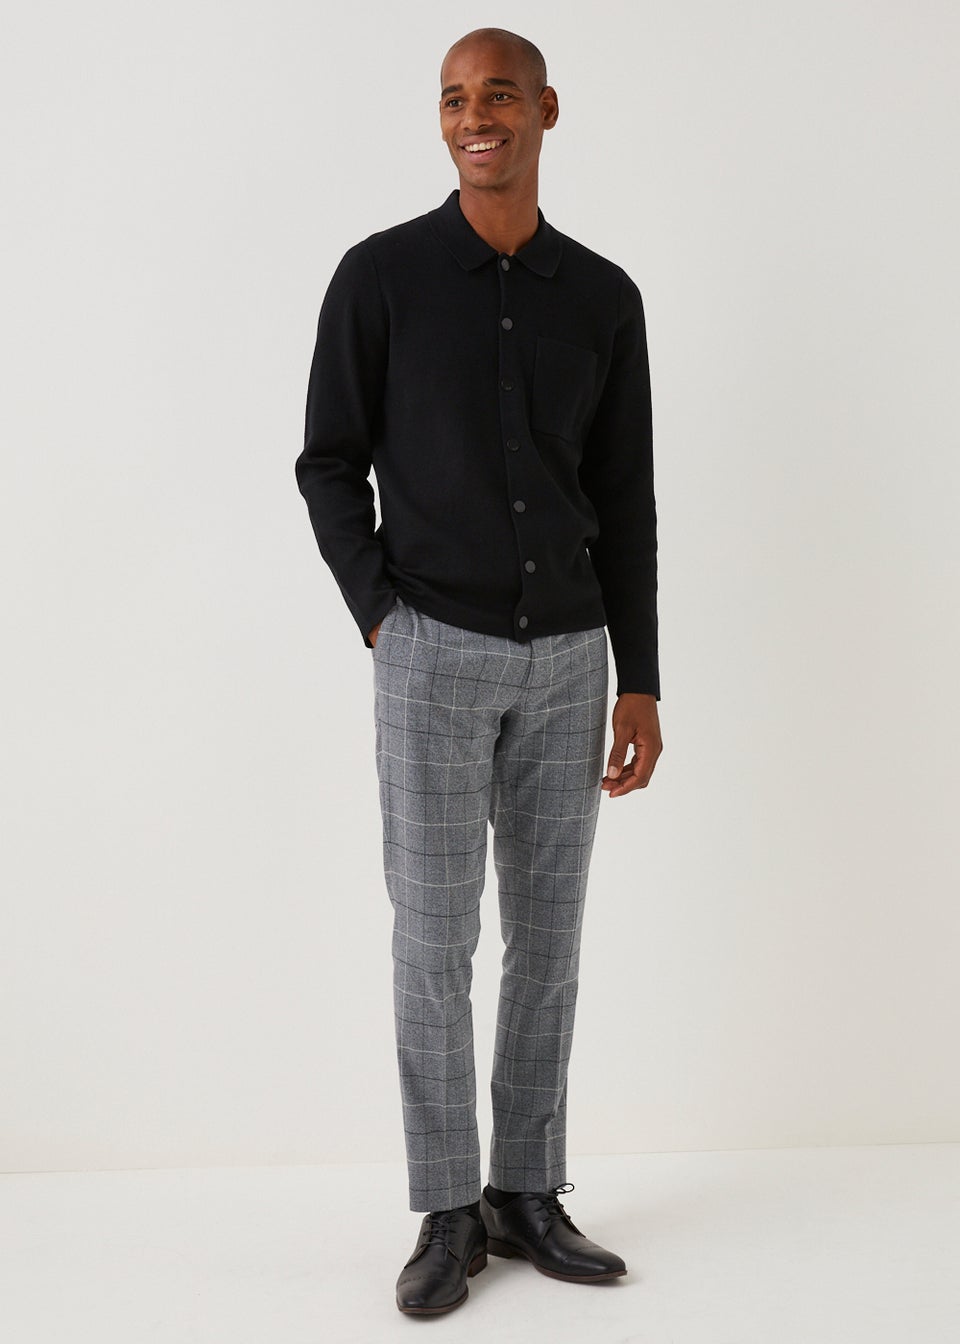 Mens Casual Fashion Plaid Skinny Pants Gentleman Business Slim Formal  Trousers - Walmart.com